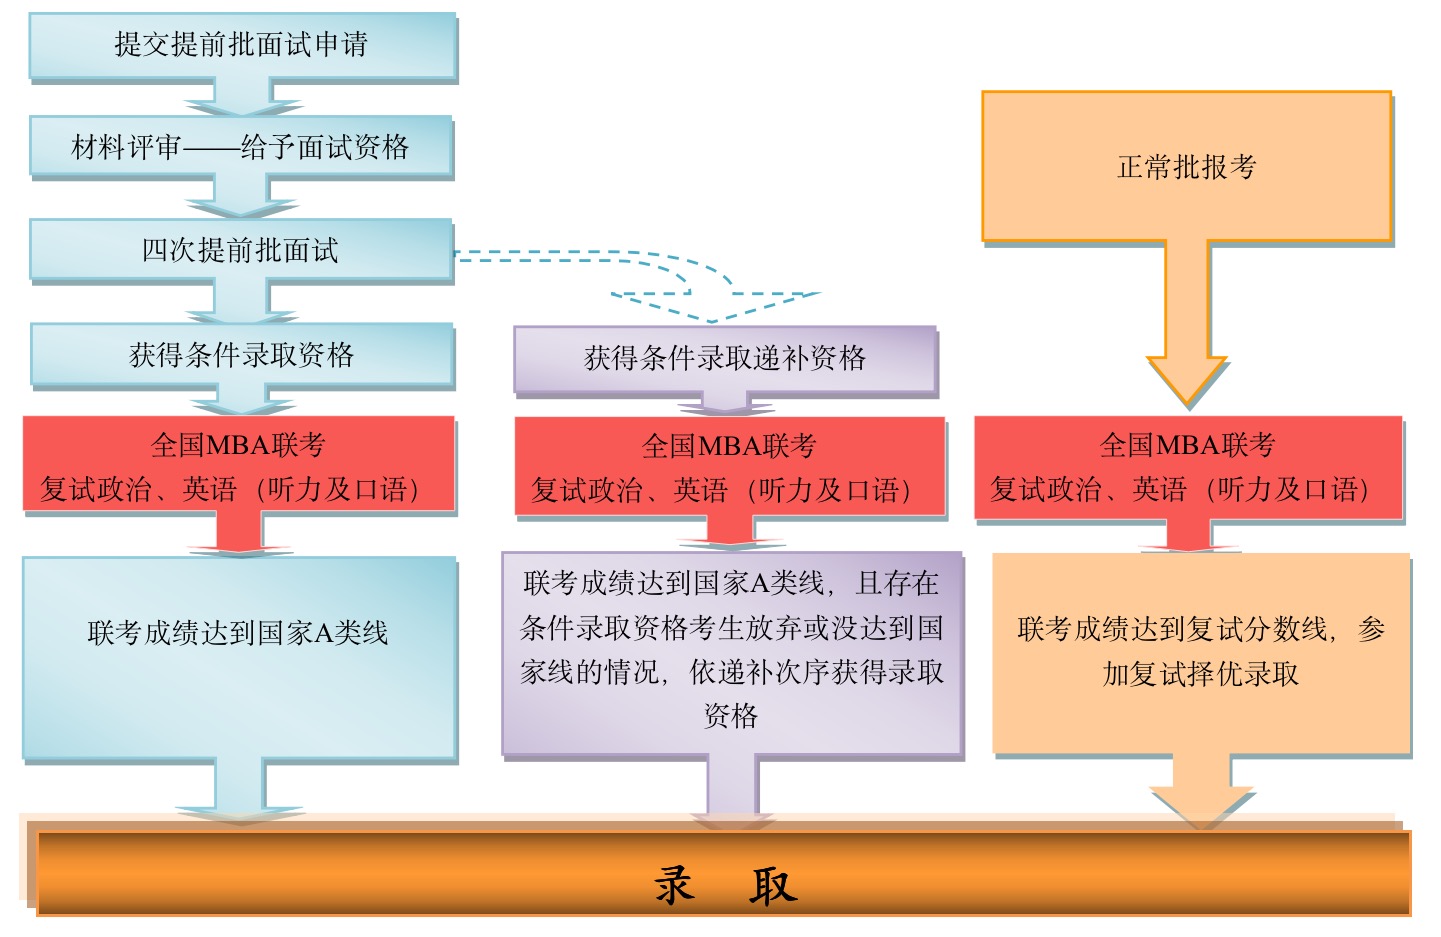 中国人民大学MBA招生流程图